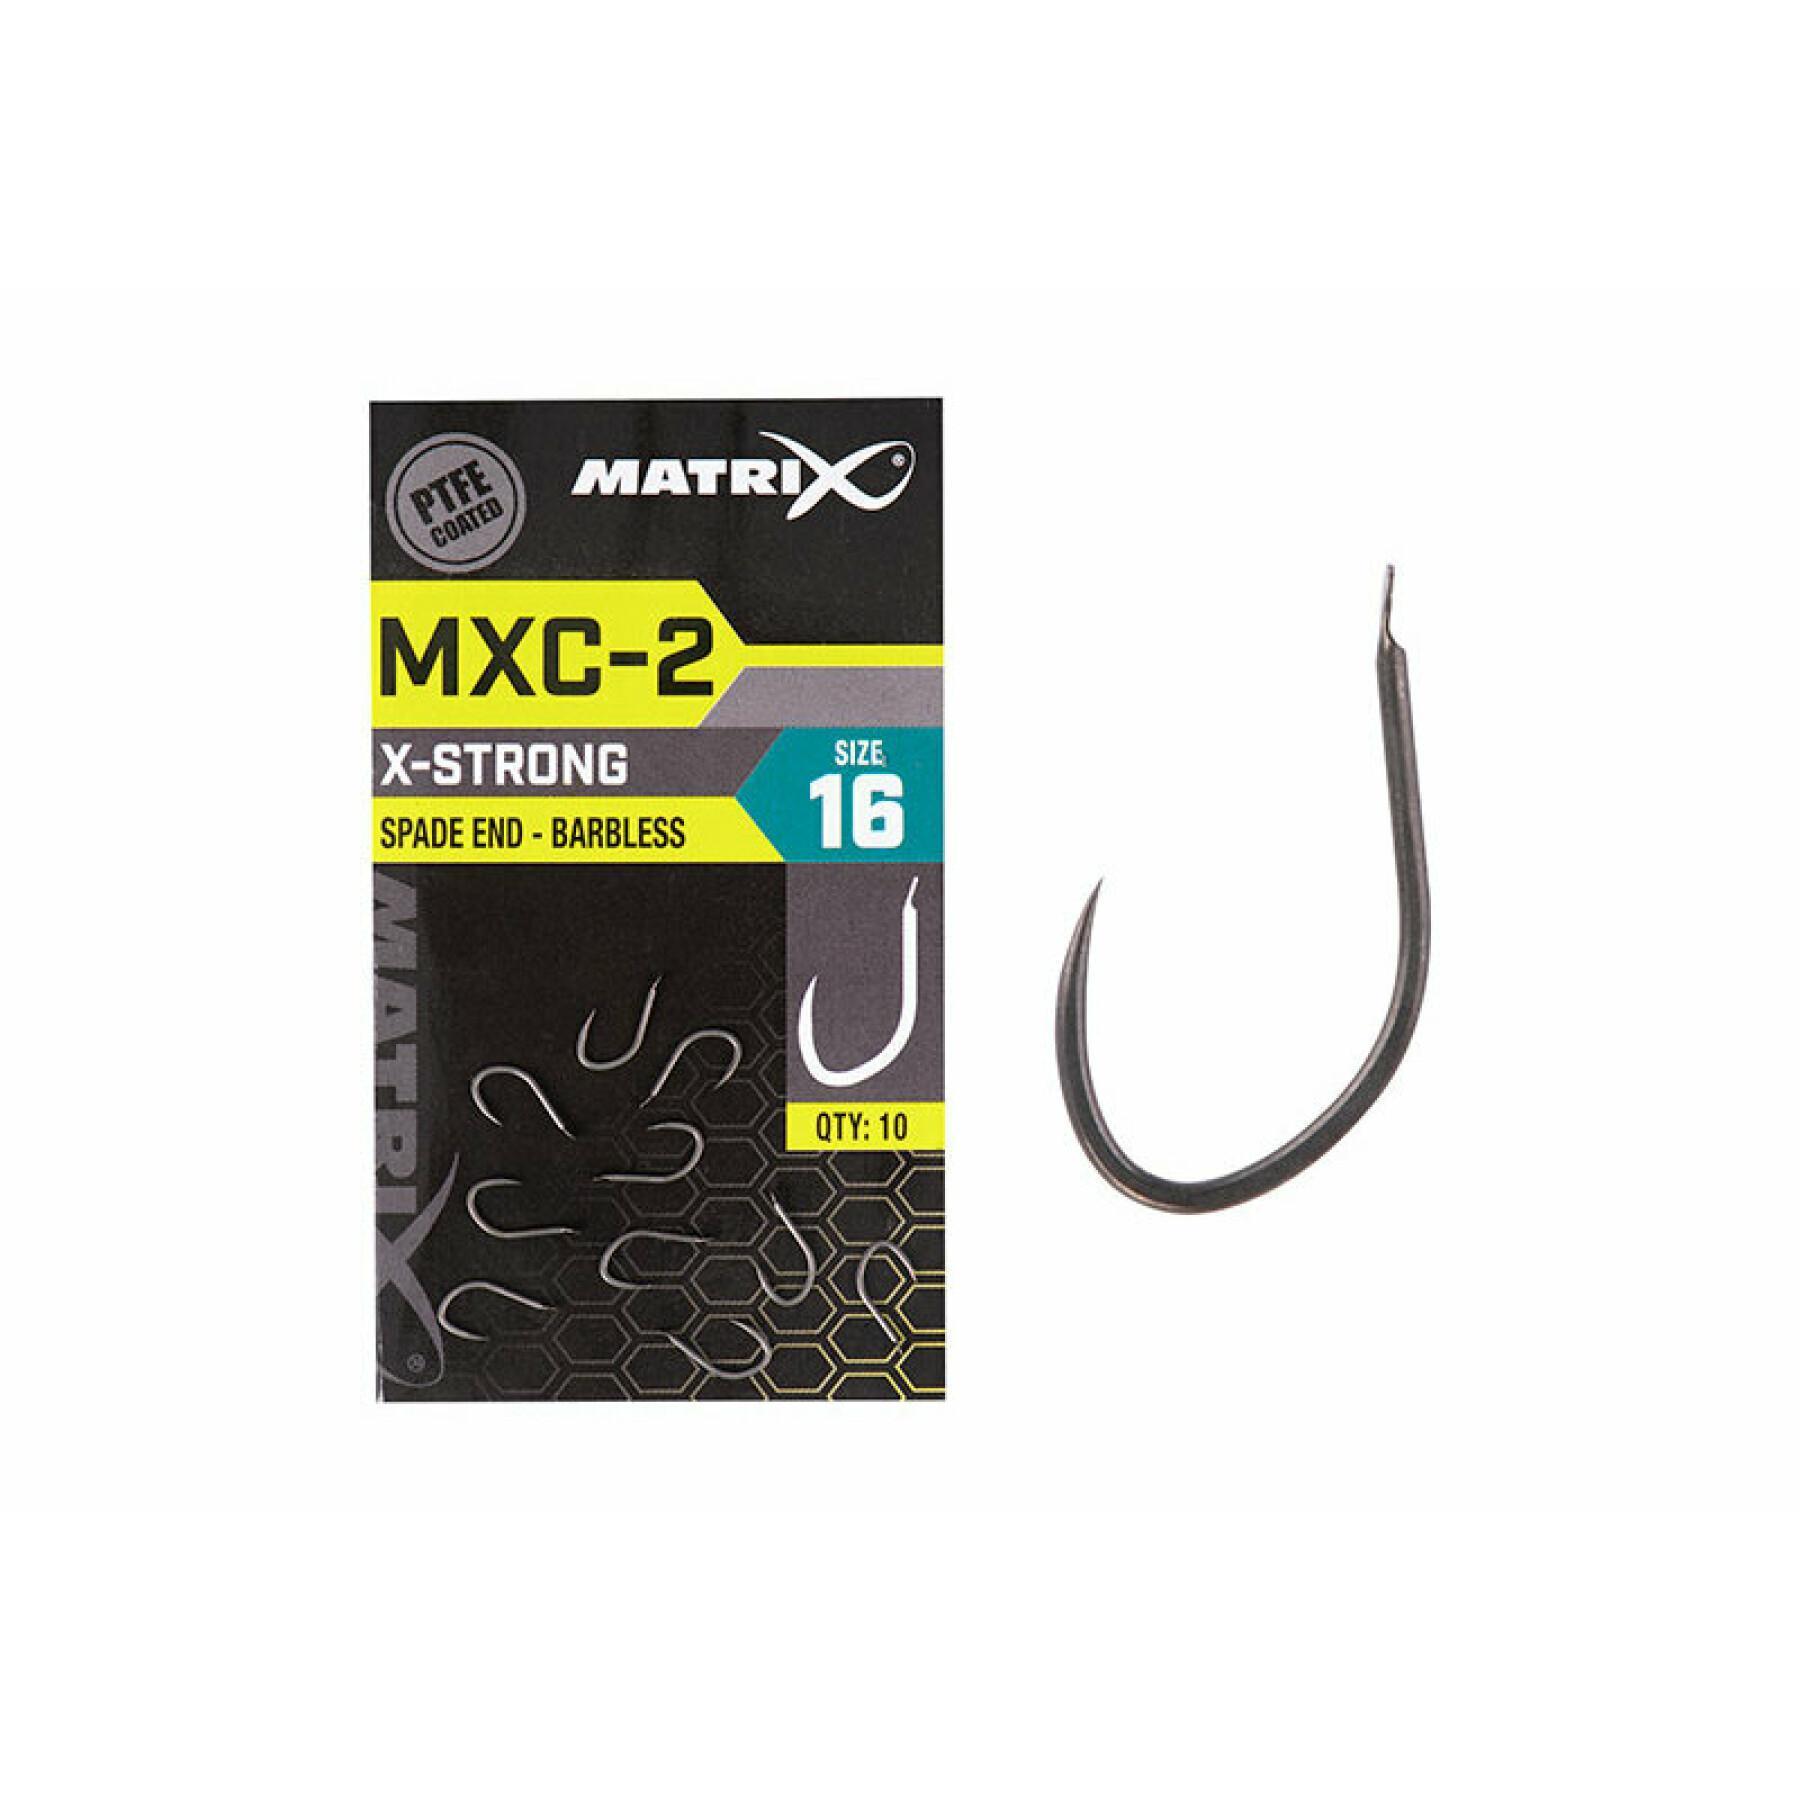 Anzóis sem barras Matrix MXC-2 Spade End (PTFE) x10